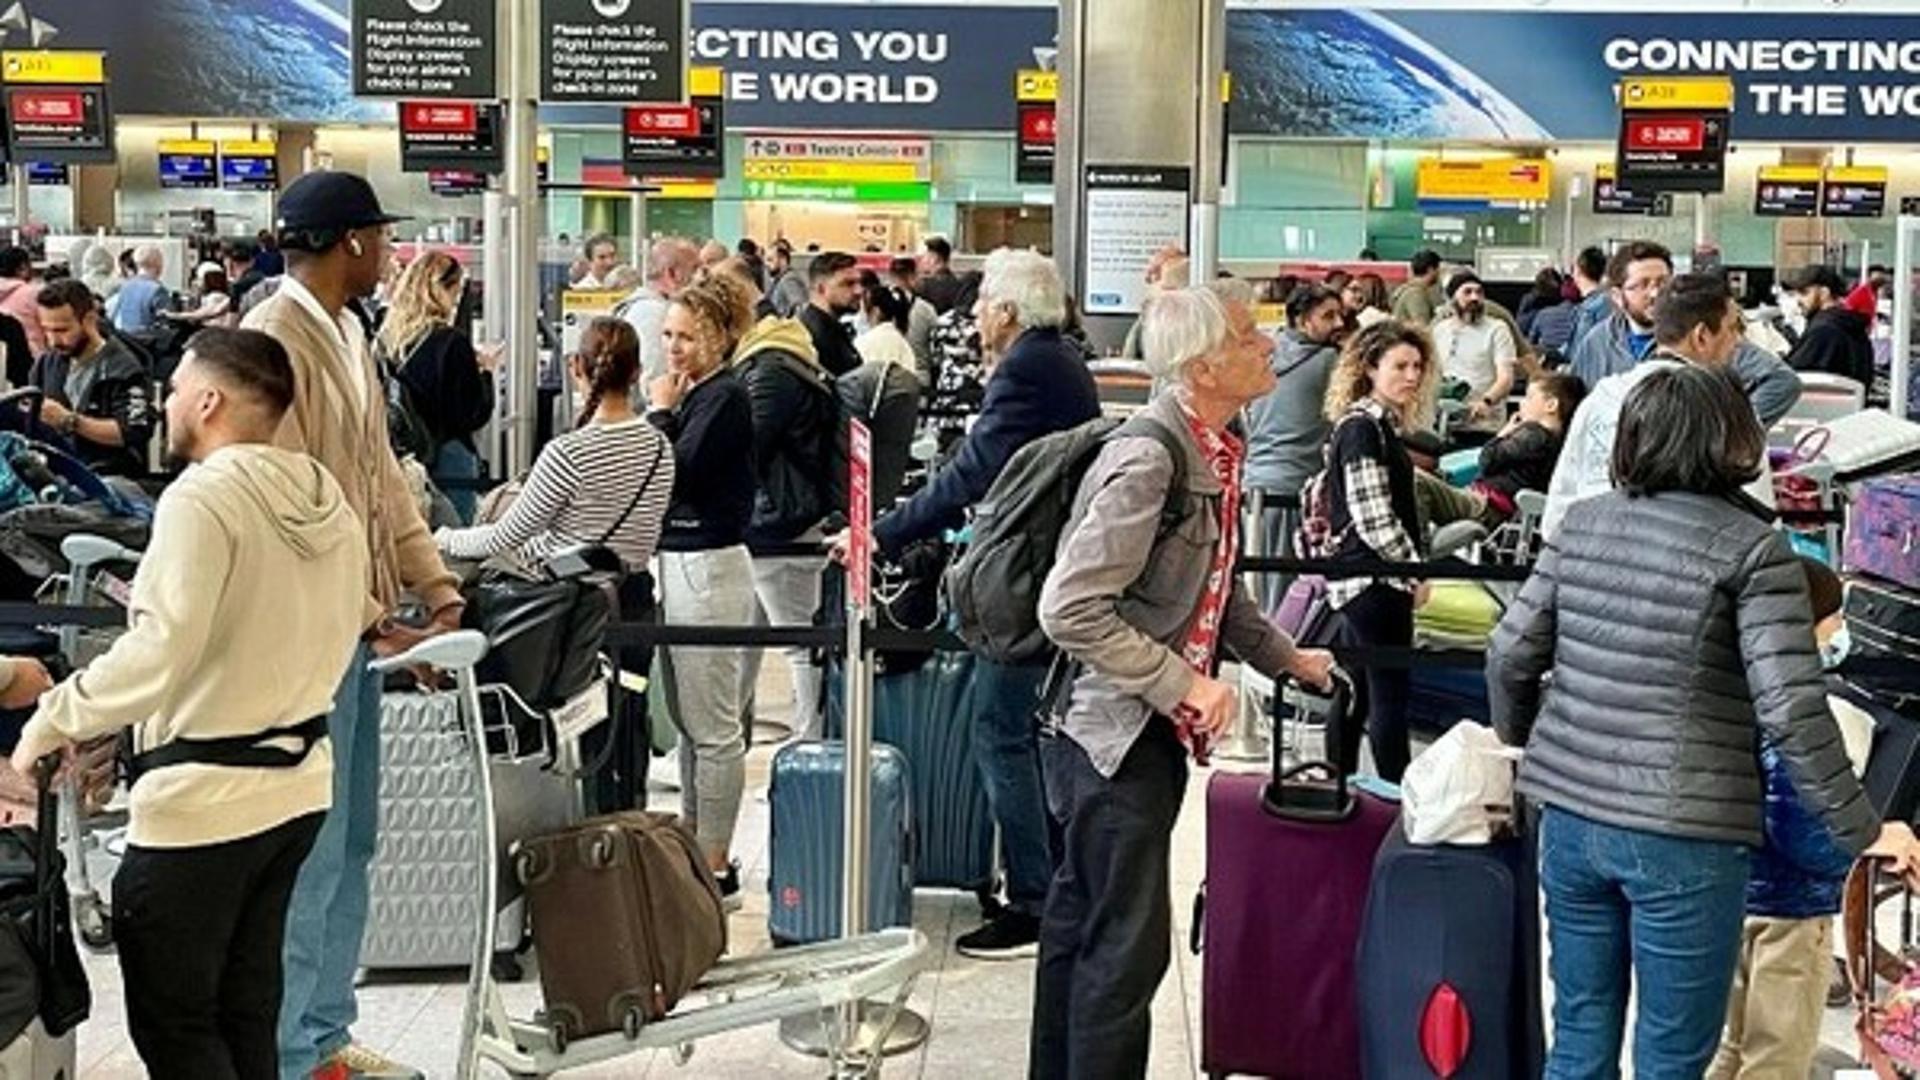 Flughafen London Heathrow. Viele Menschen Stauen sich aufgrunddes Personalmangels nach zwei Jahren Pandemie.